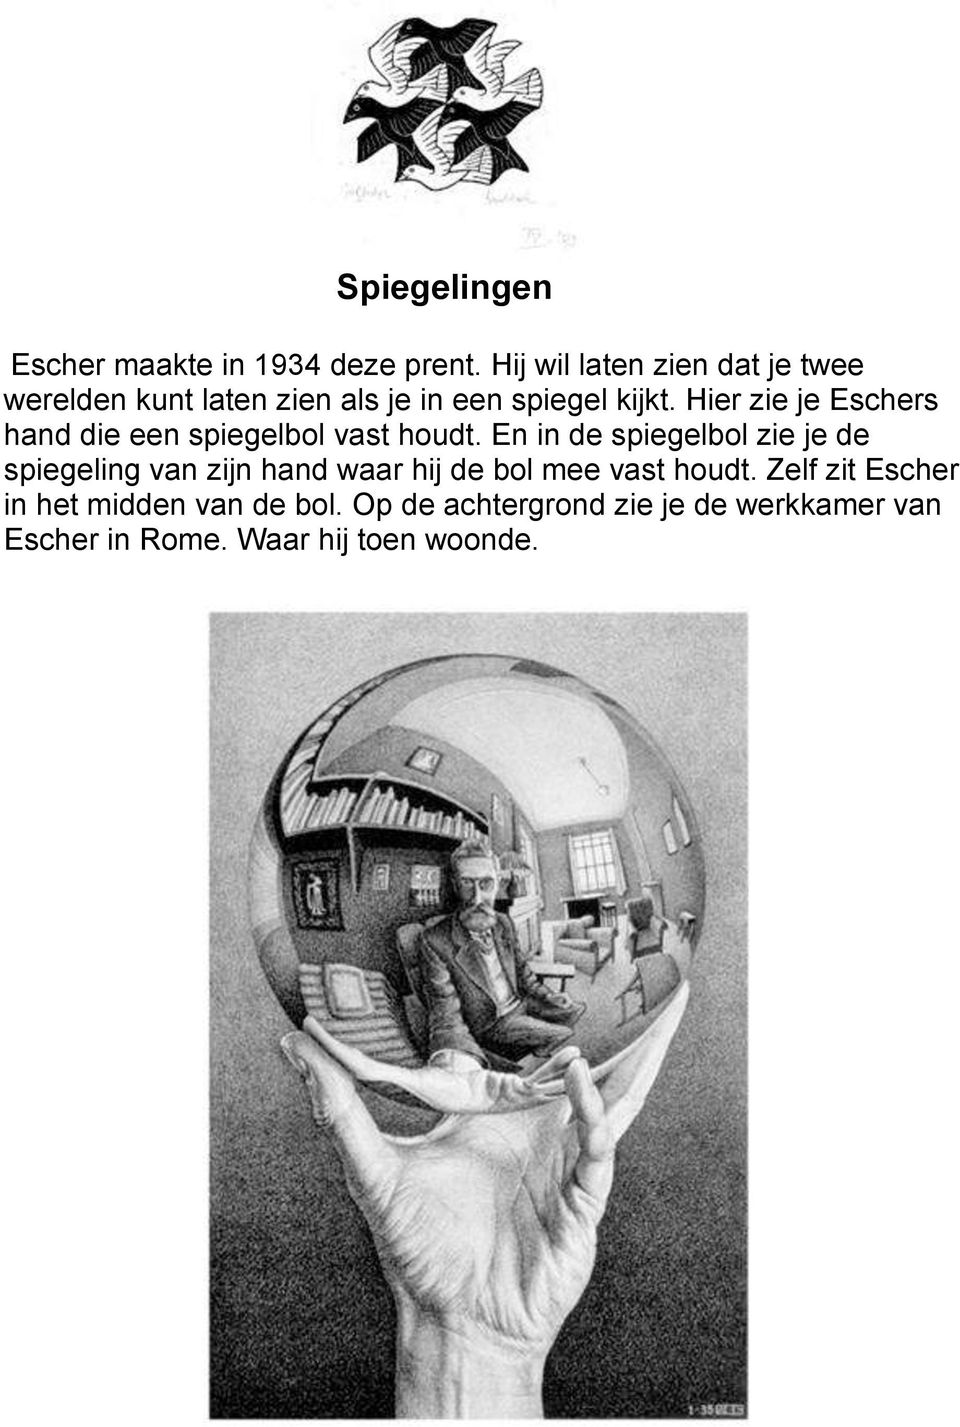 Hier zie je Eschers hand die een spiegelbol vast houdt.